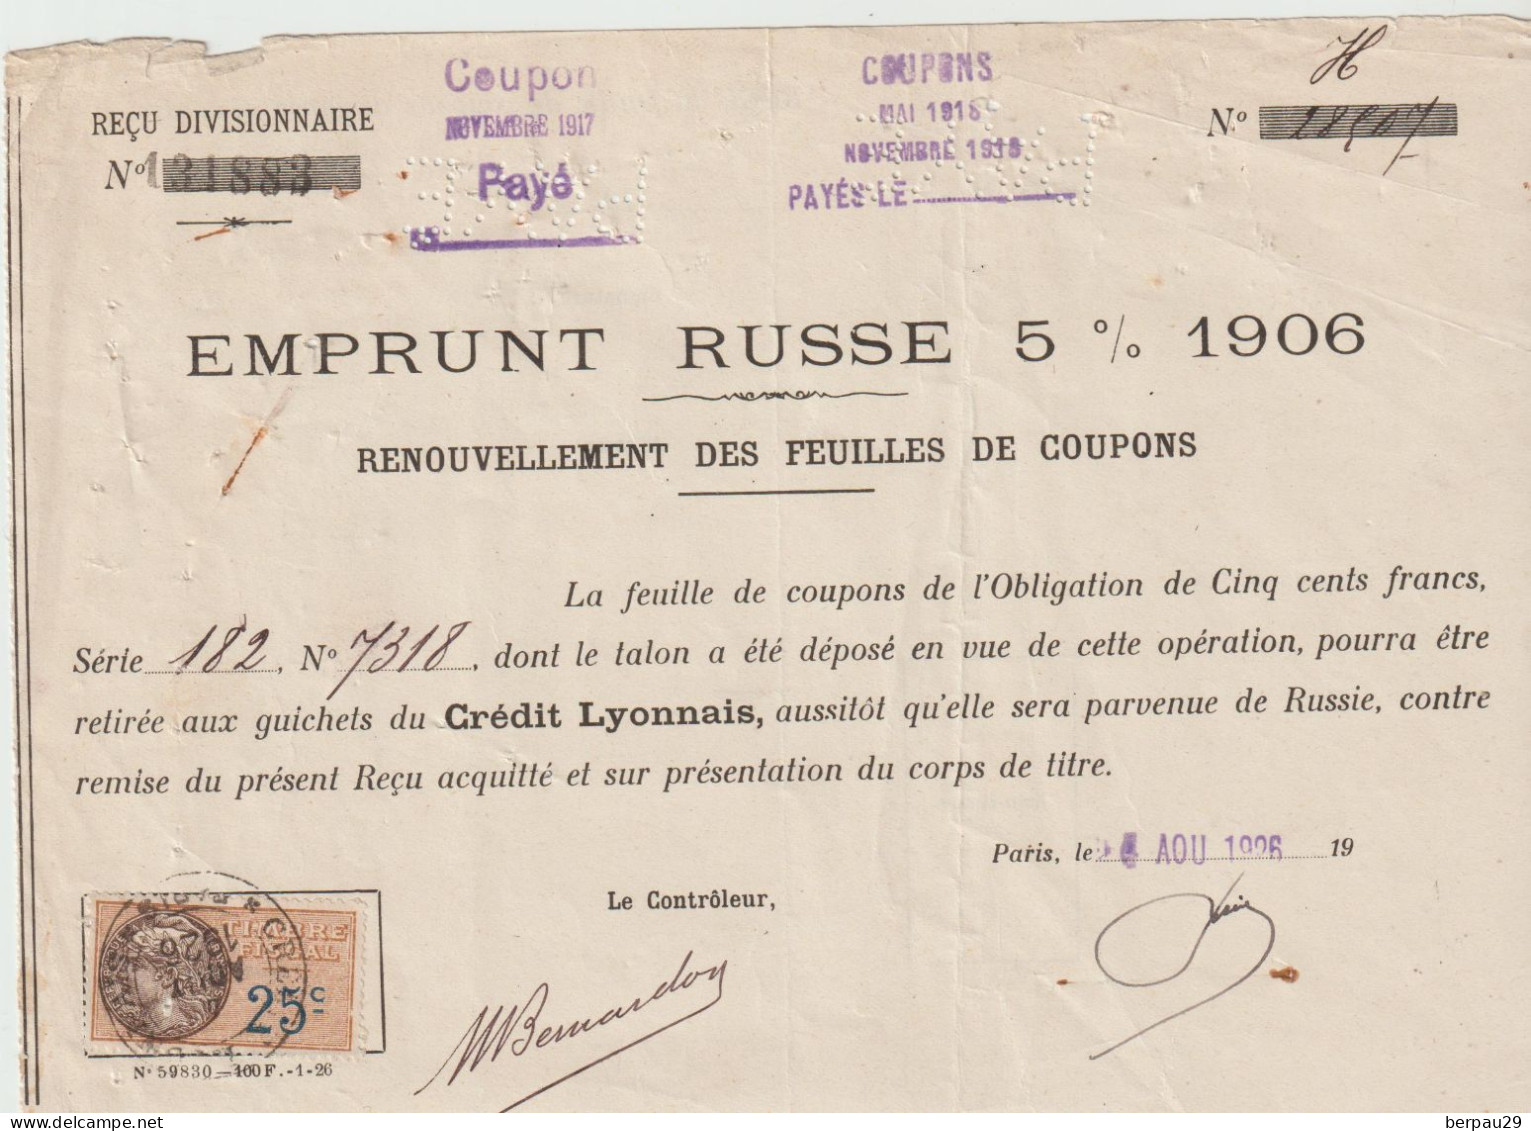 1906 Emprunt RUSSE 6% - Action & Titres -Renouvellement Feuilles Coupons Paris 1926- Timbre Fiscal 25 C - Russie